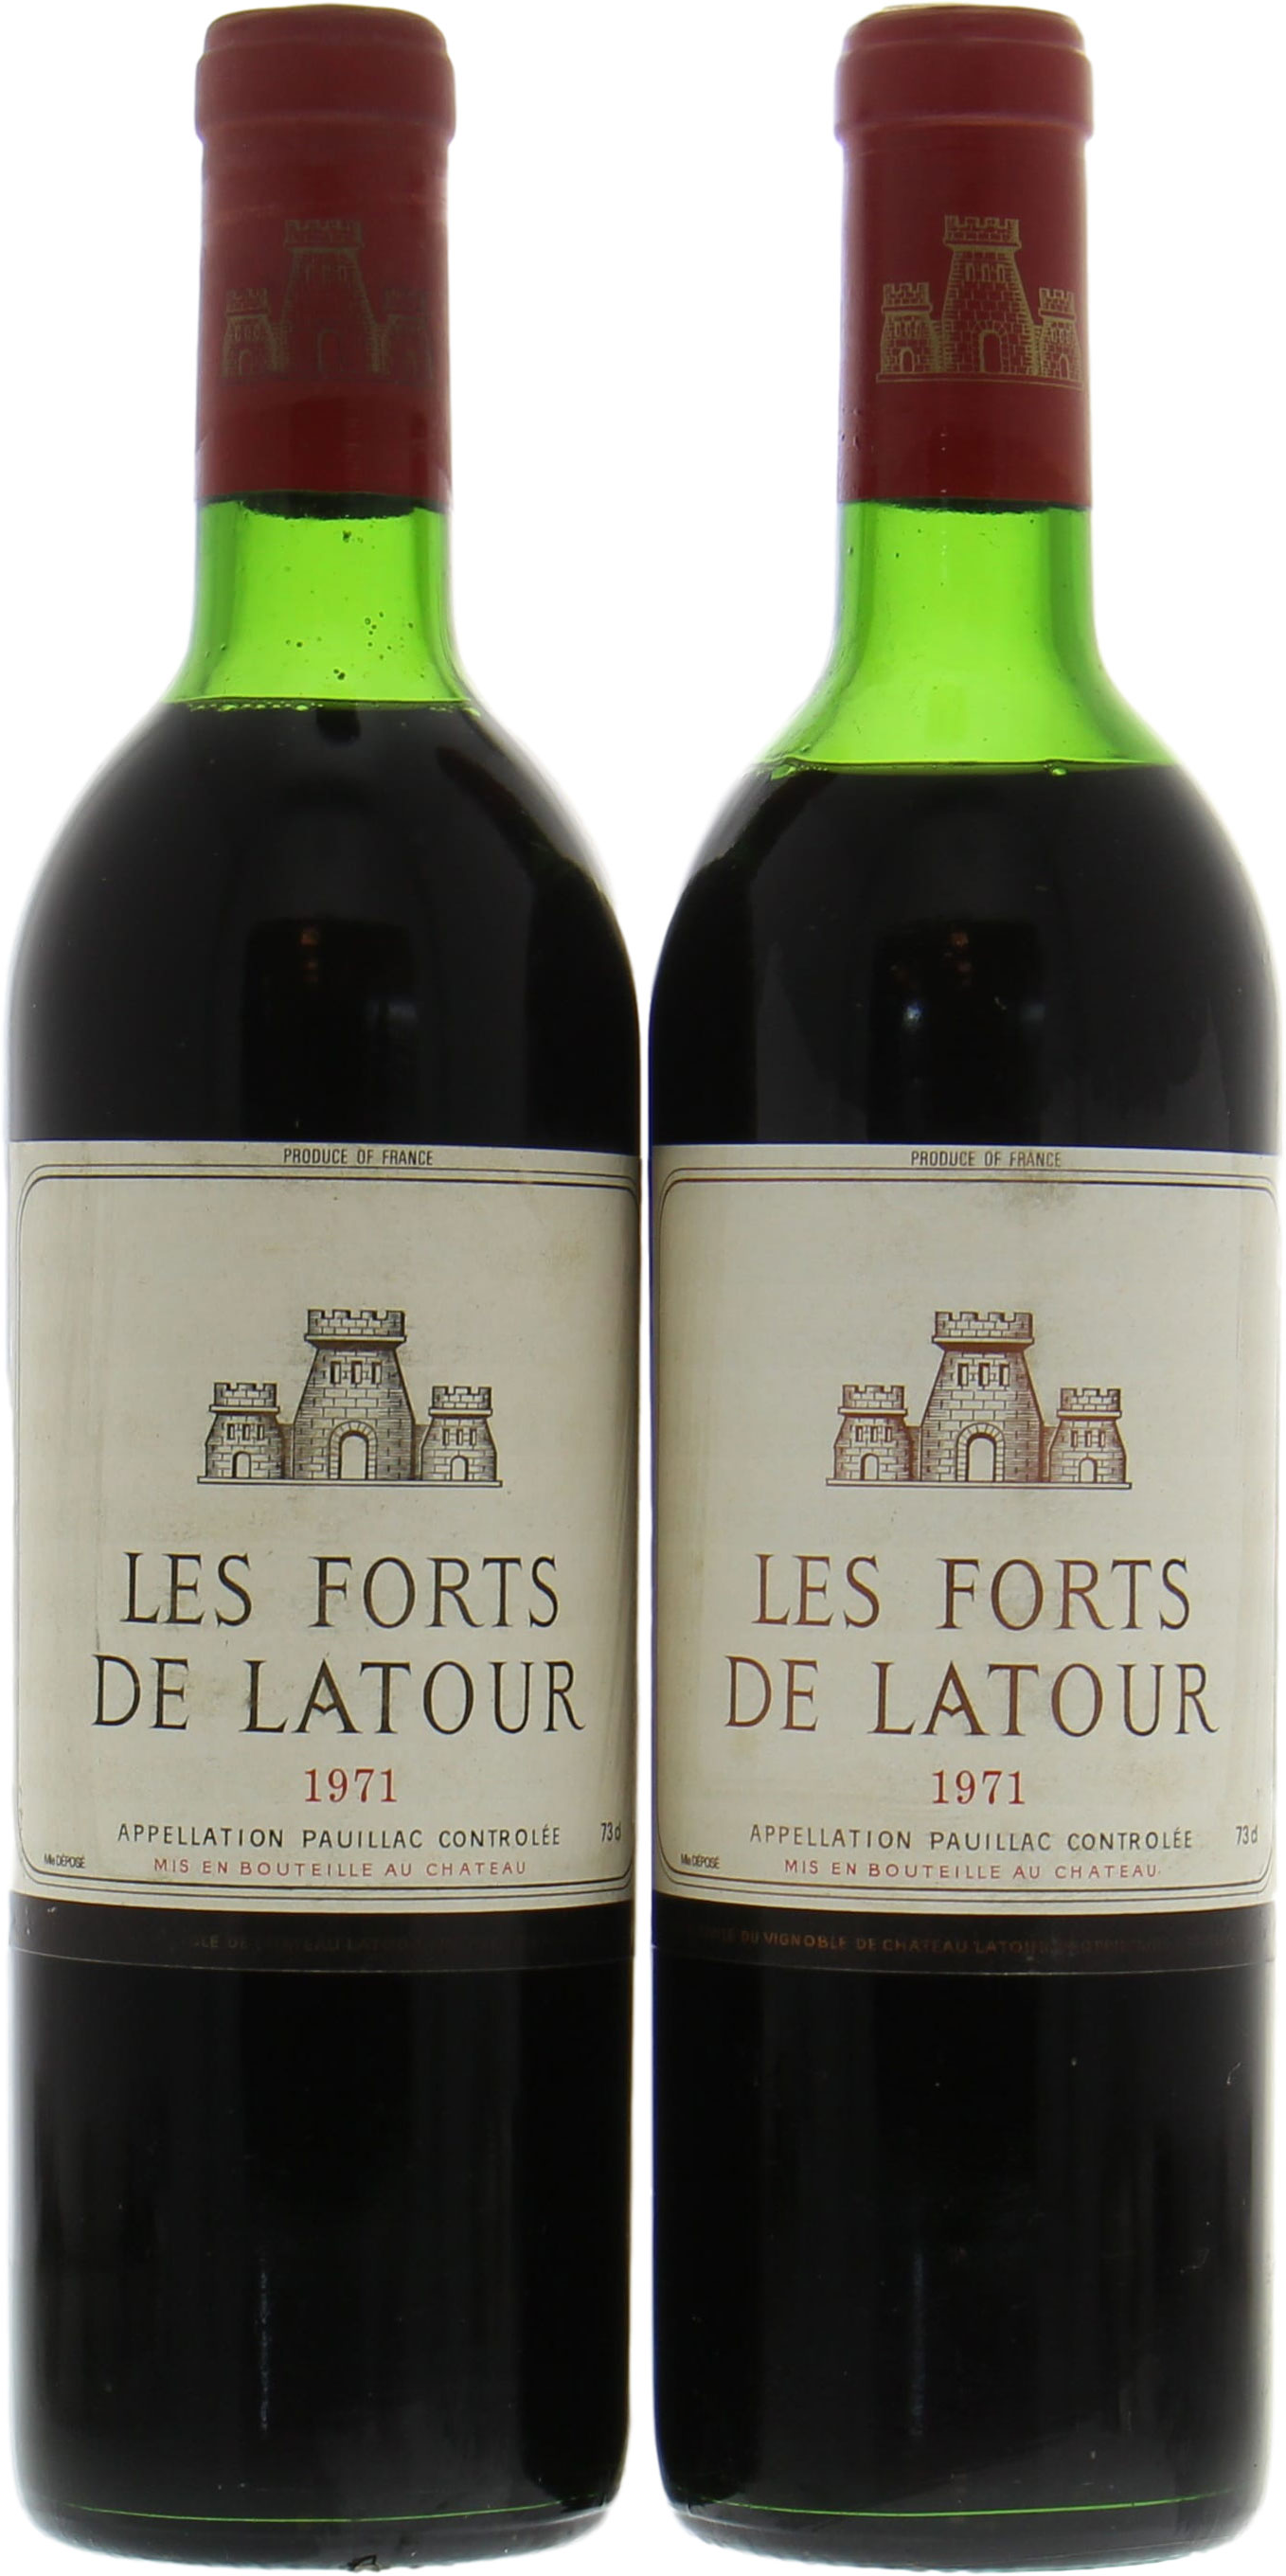 Chateau Latour - Les Forts de Latour 1971 Top Shoulder